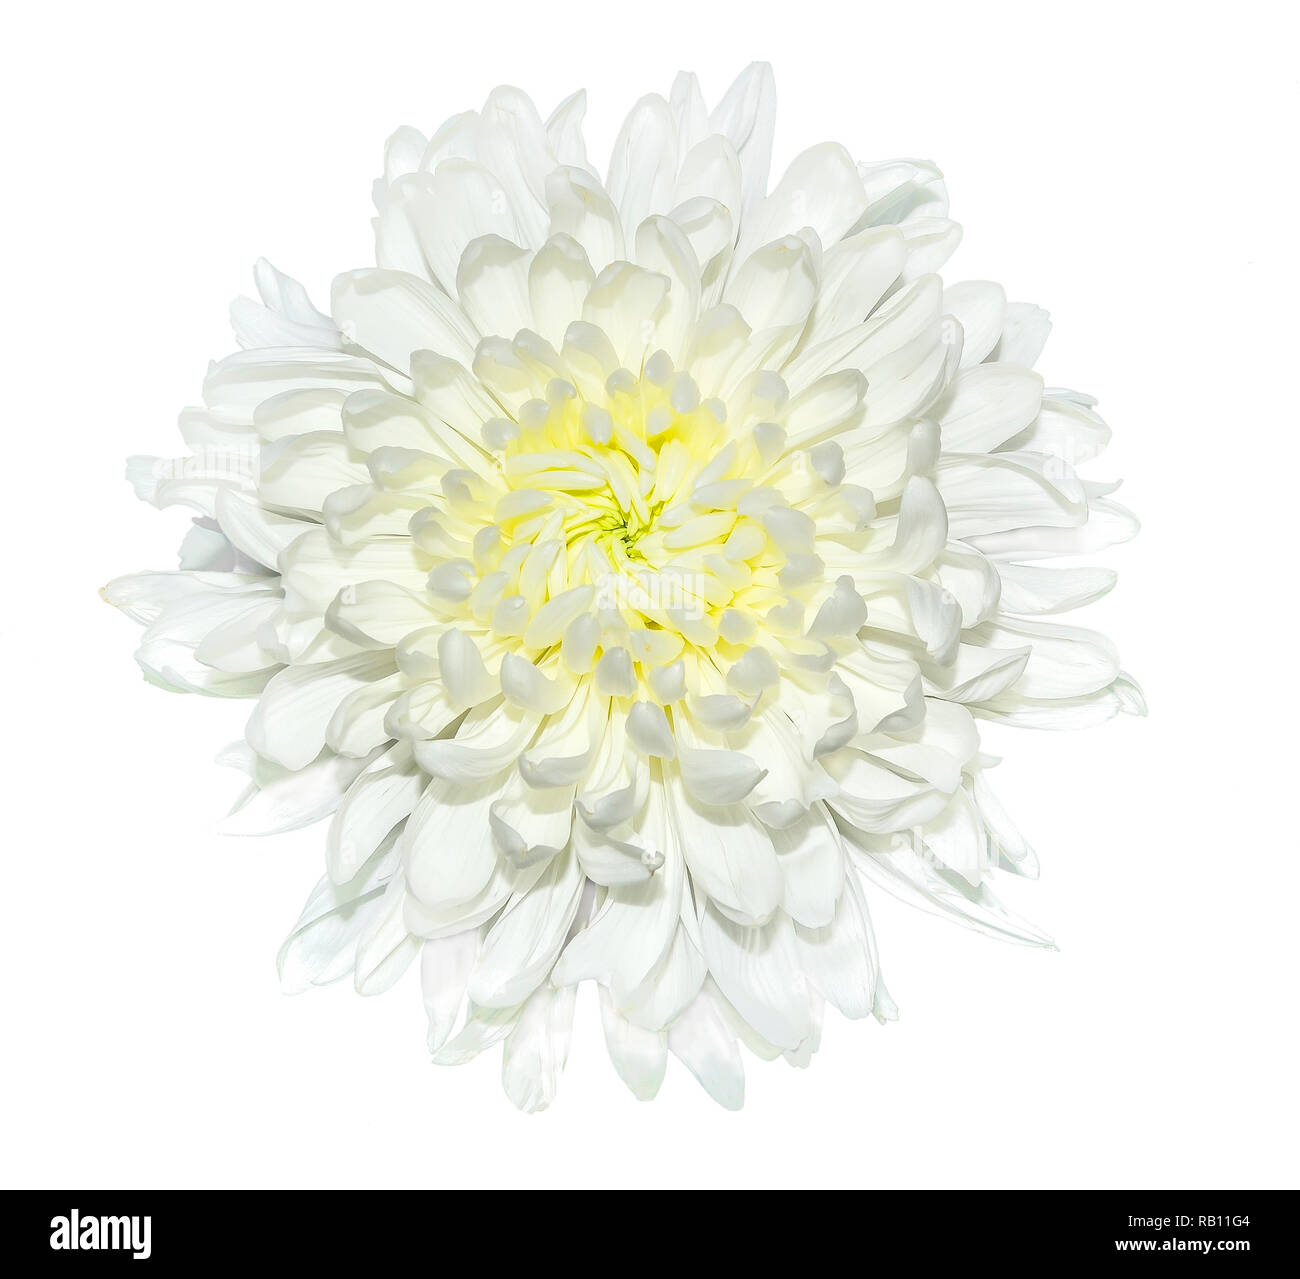 Fleur de chrysanthème blanc simple avec milieu jaune close up, isolé sur un fond blanc. Belle flowerhead élégant avec des pétales délicats Banque D'Images